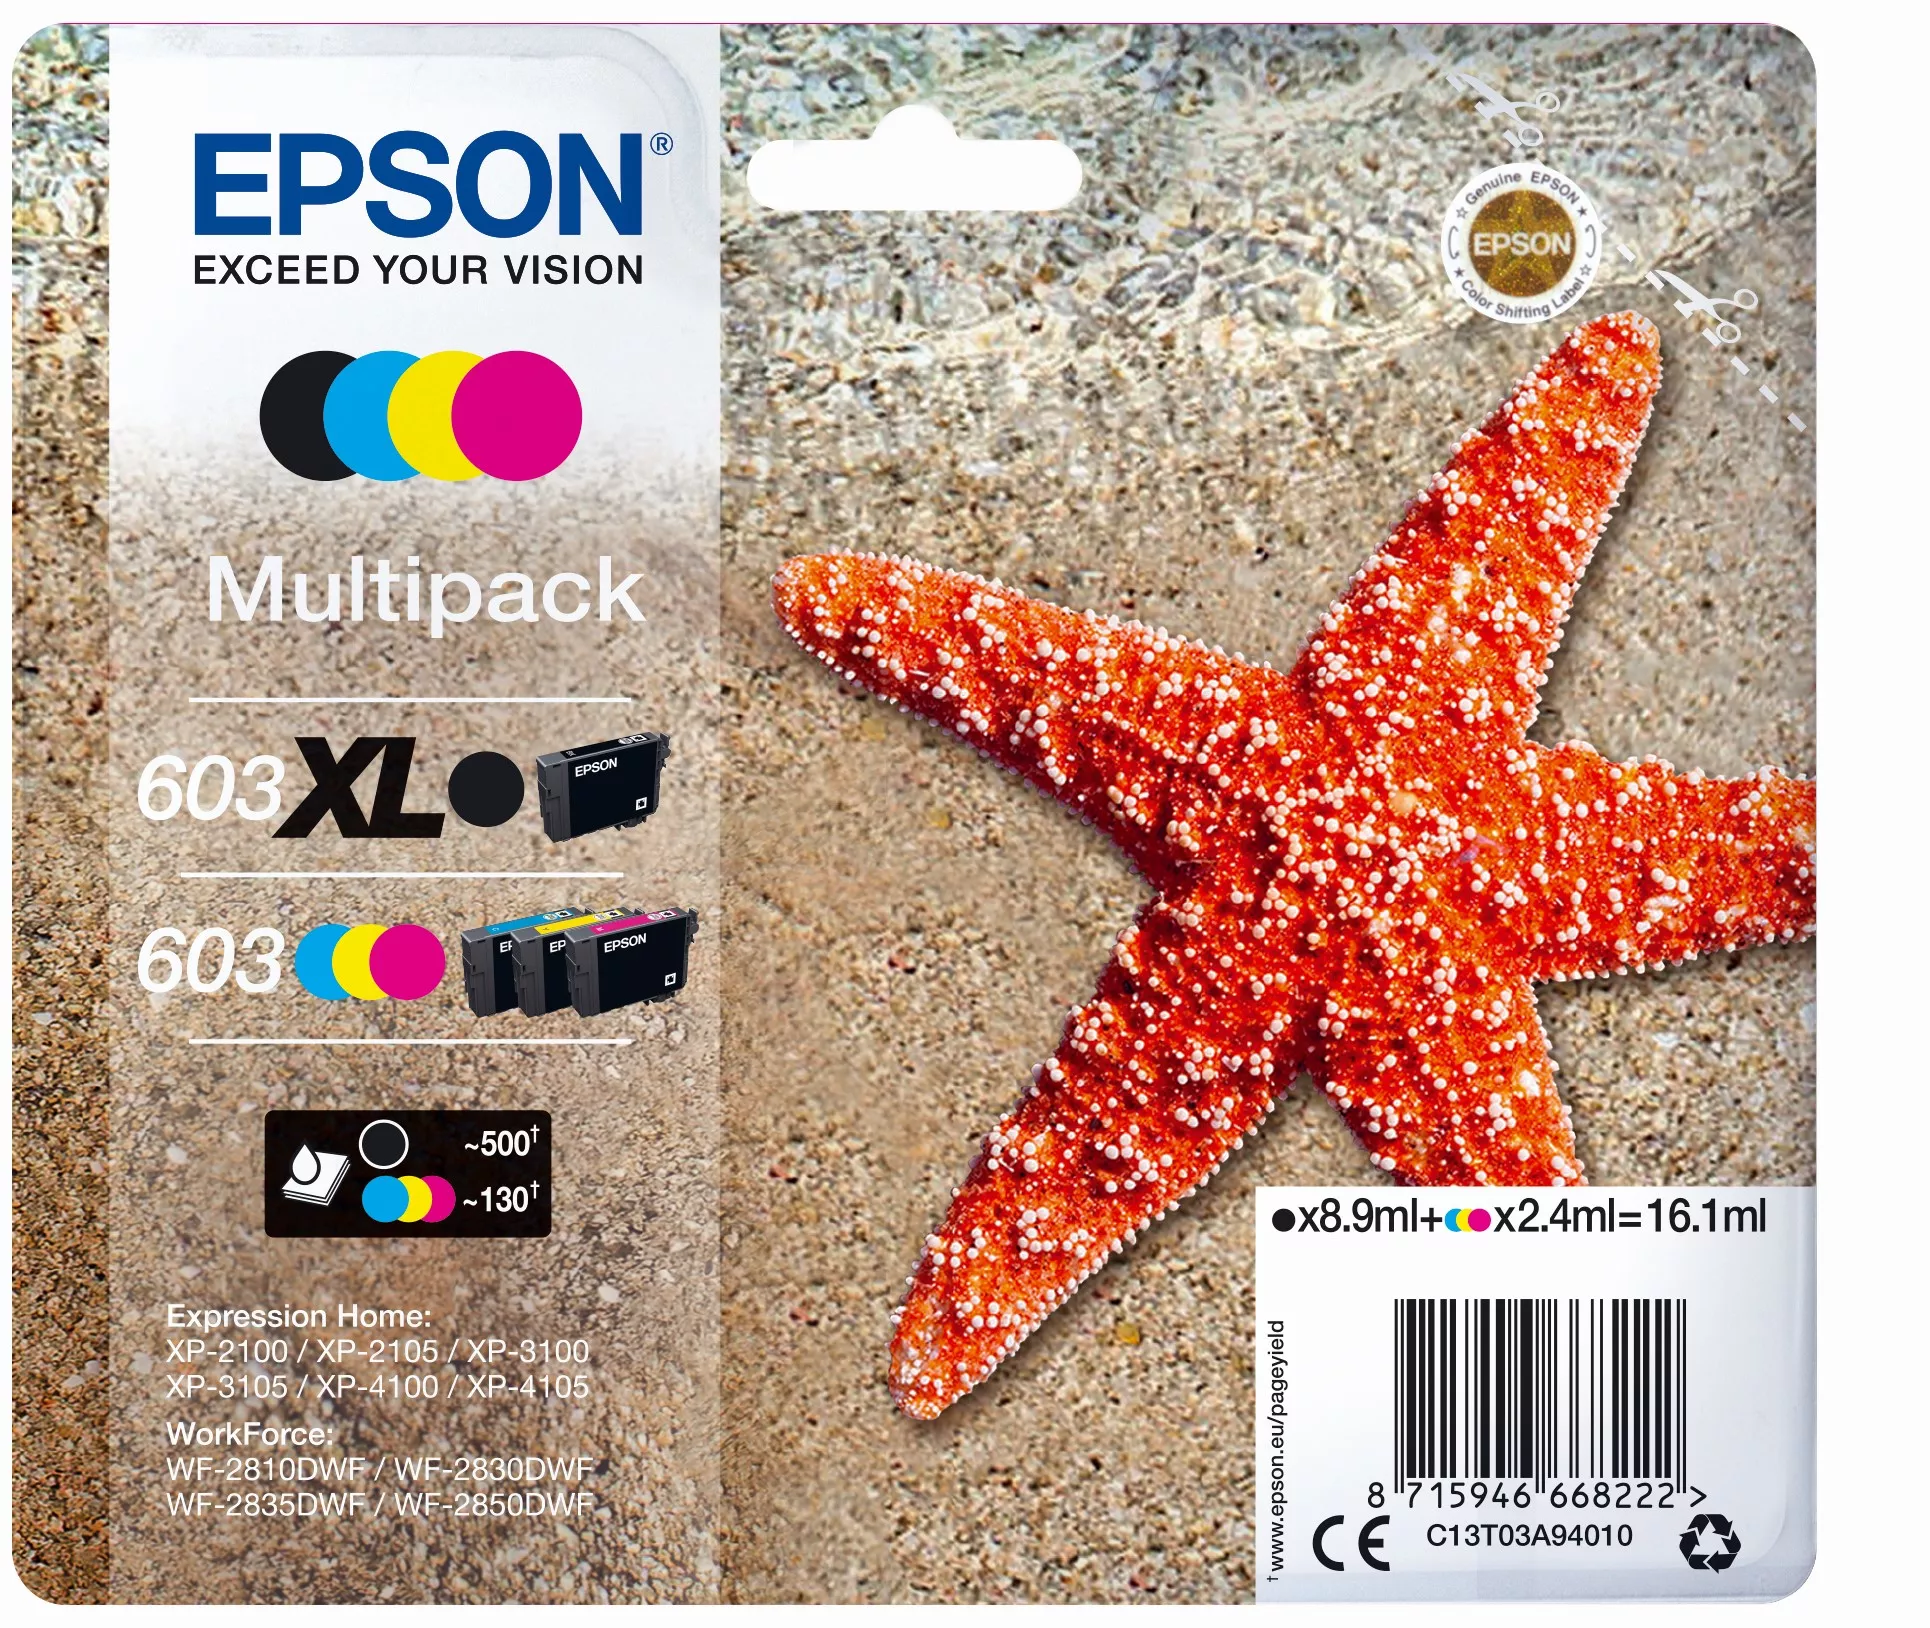 Achat EPSON Multipack 4-colours 603 XL Black/Std. CMY et autres produits de la marque Epson